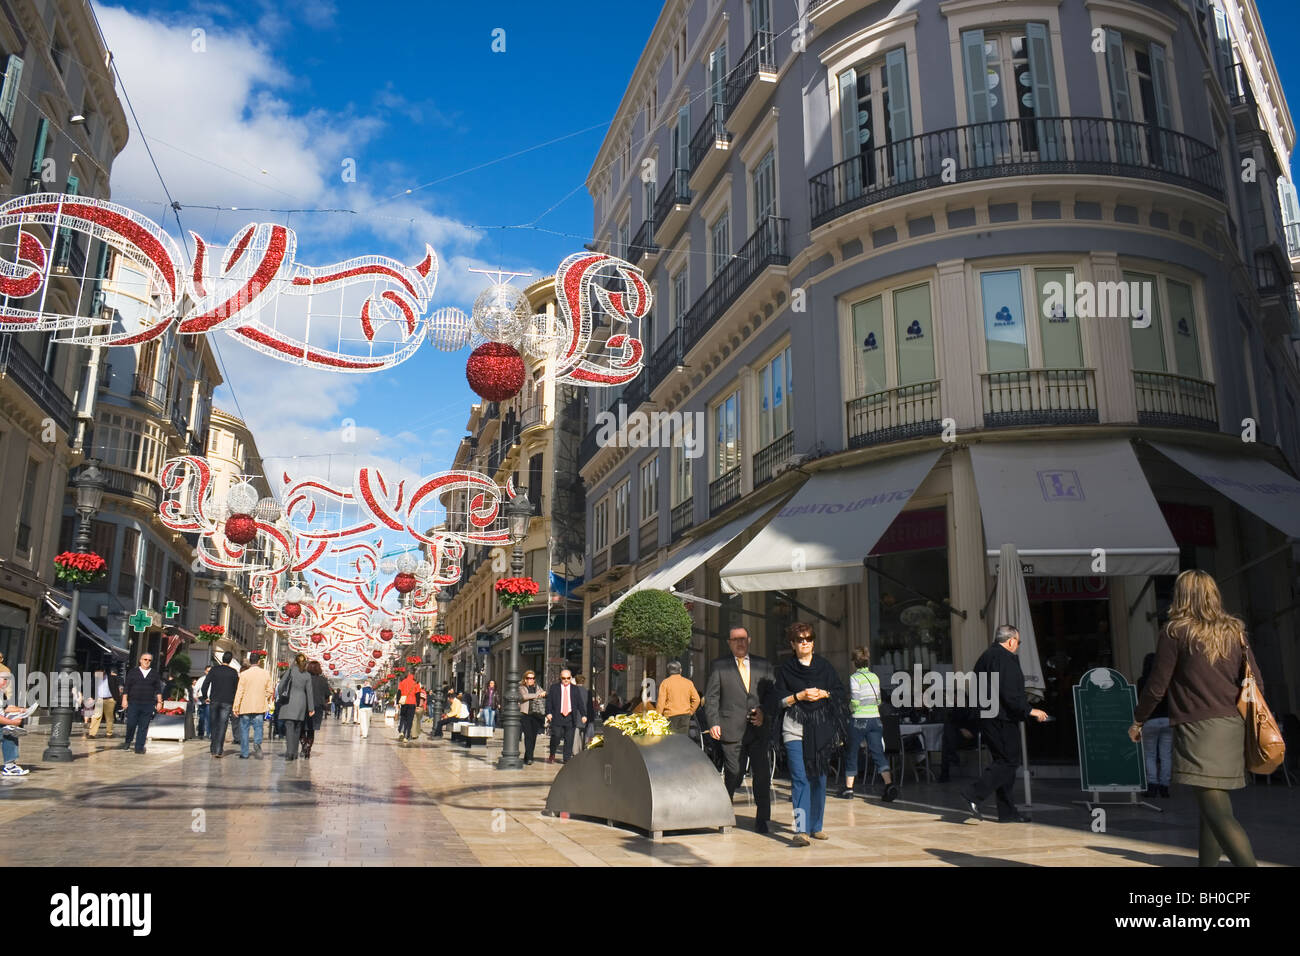 Calle Marques de Larios avec décorations de Noël, Malaga, Costa del Sol, Espagne. Banque D'Images